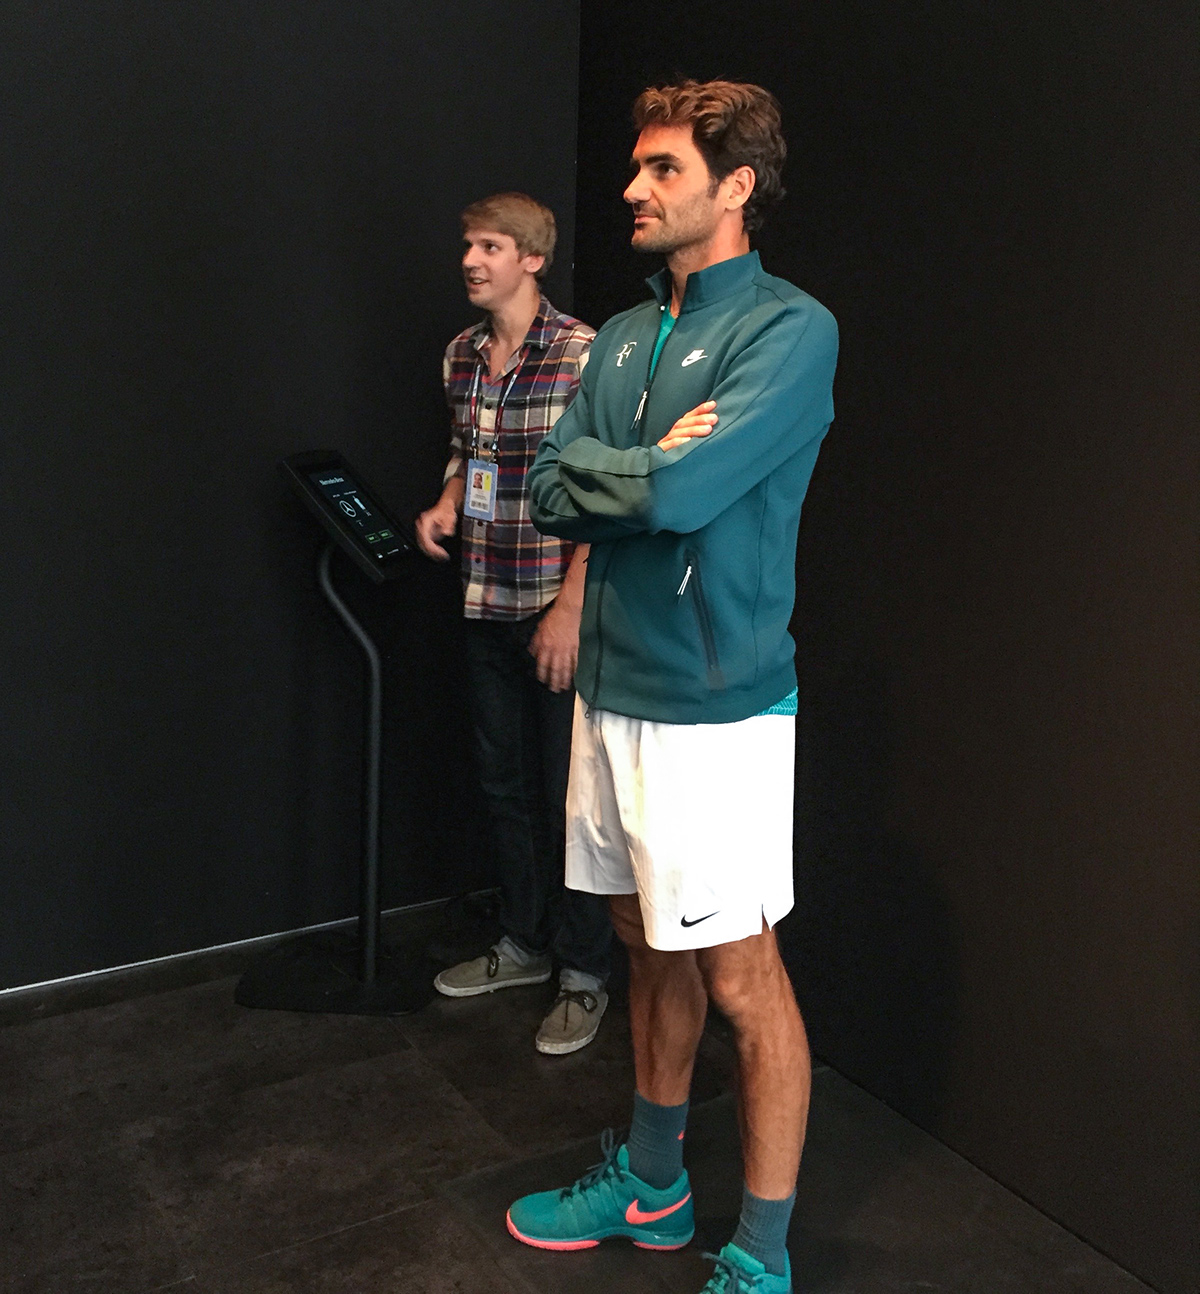 hologram interactive projection vr roger federer USopen holographic tennis Event vntana